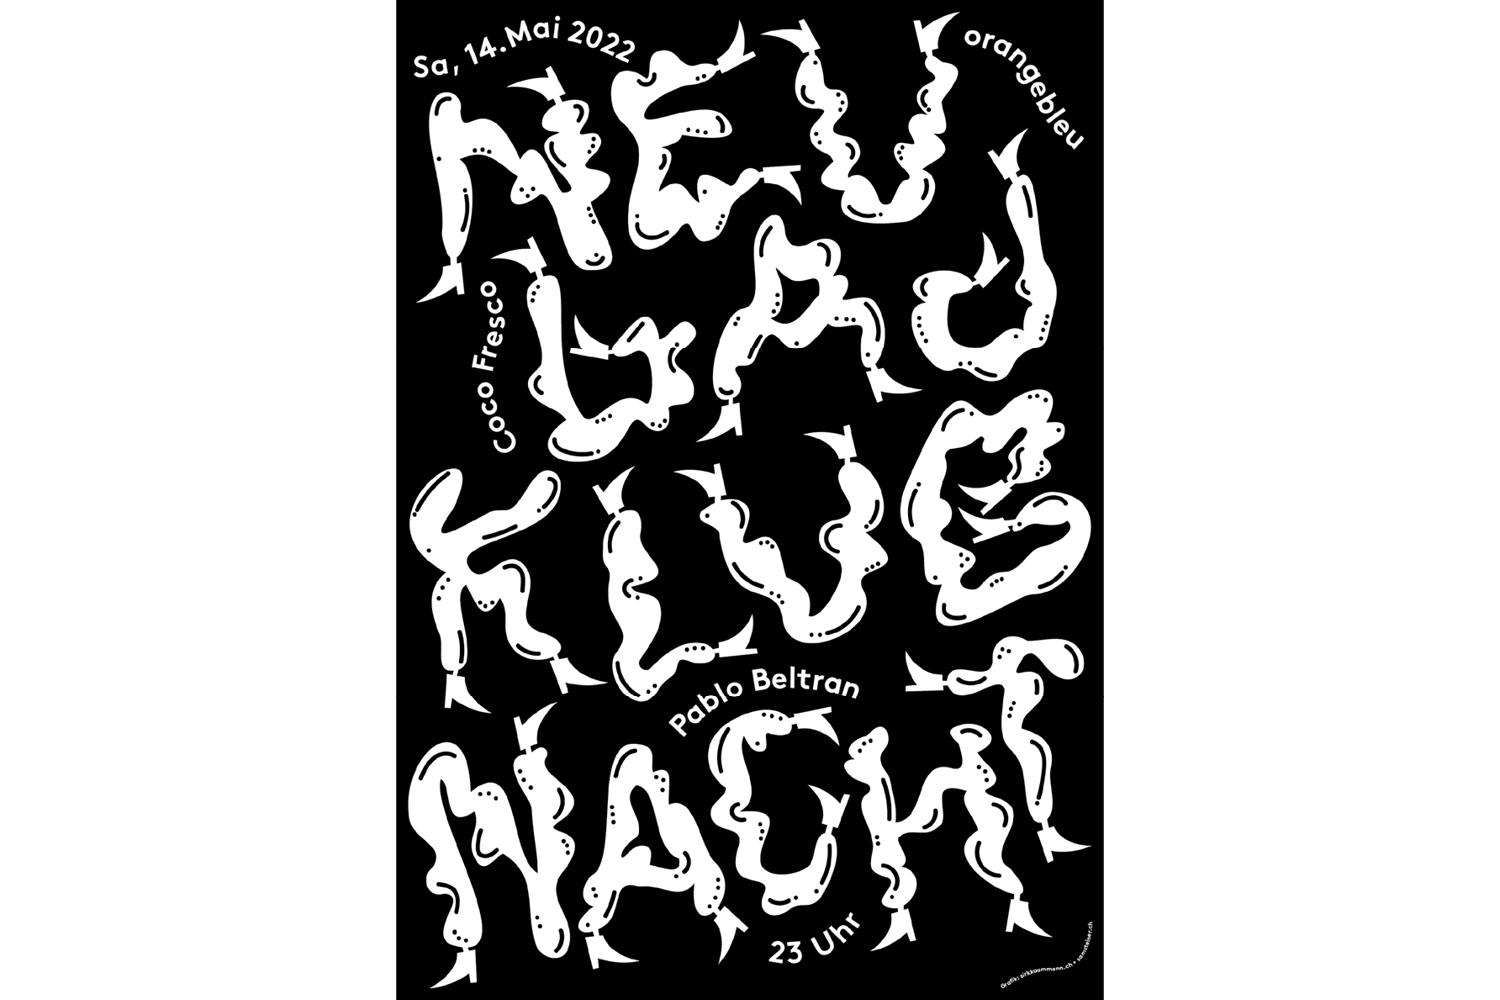 Schwarz-Weisses Plakat für die Klubnacht am 14. Mai mit tanzender Schrift.